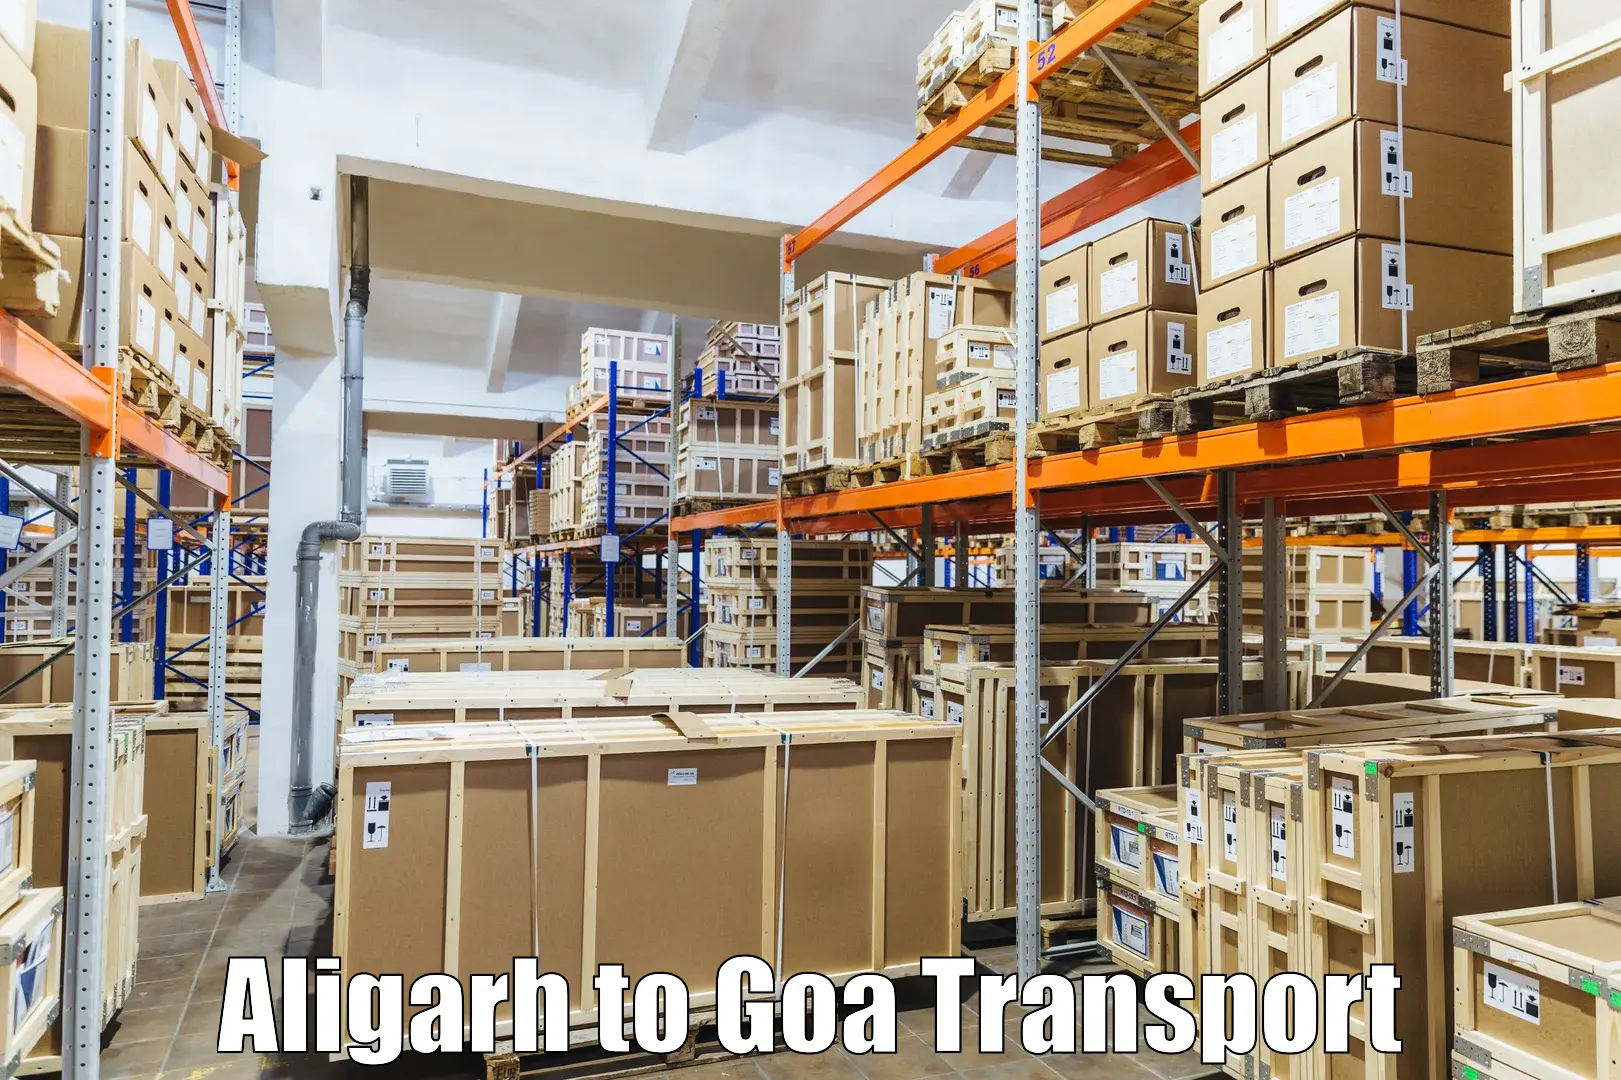 Door to door transport services Aligarh to Bicholim